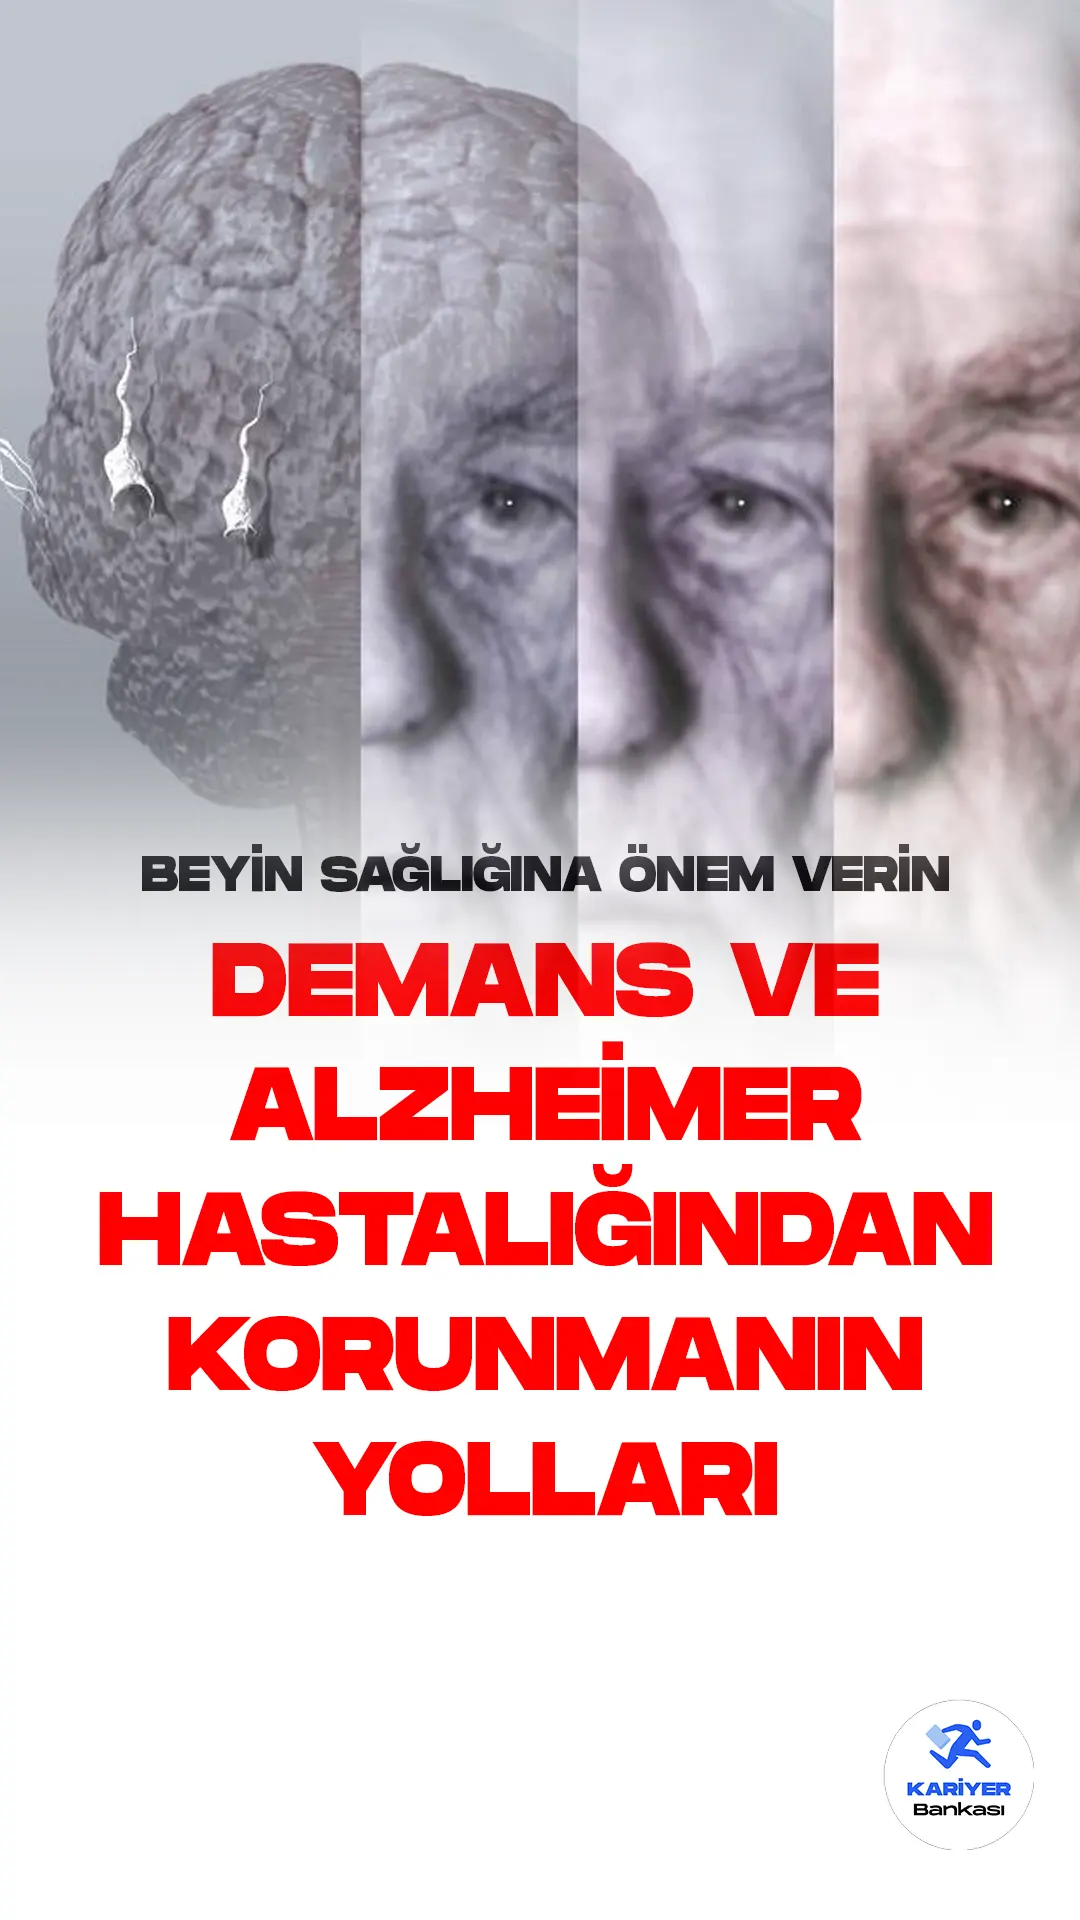 Demans ve Alzheimer, yaşlılık döneminde ortaya çıkan ve yaşam kalitesini ciddi anlamda düşüren beyin hastalıklarıdır. Bu hastalıklardan korunmak için erken yaşlardan itibaren beyin sağlığına önem vermek önemlidir.